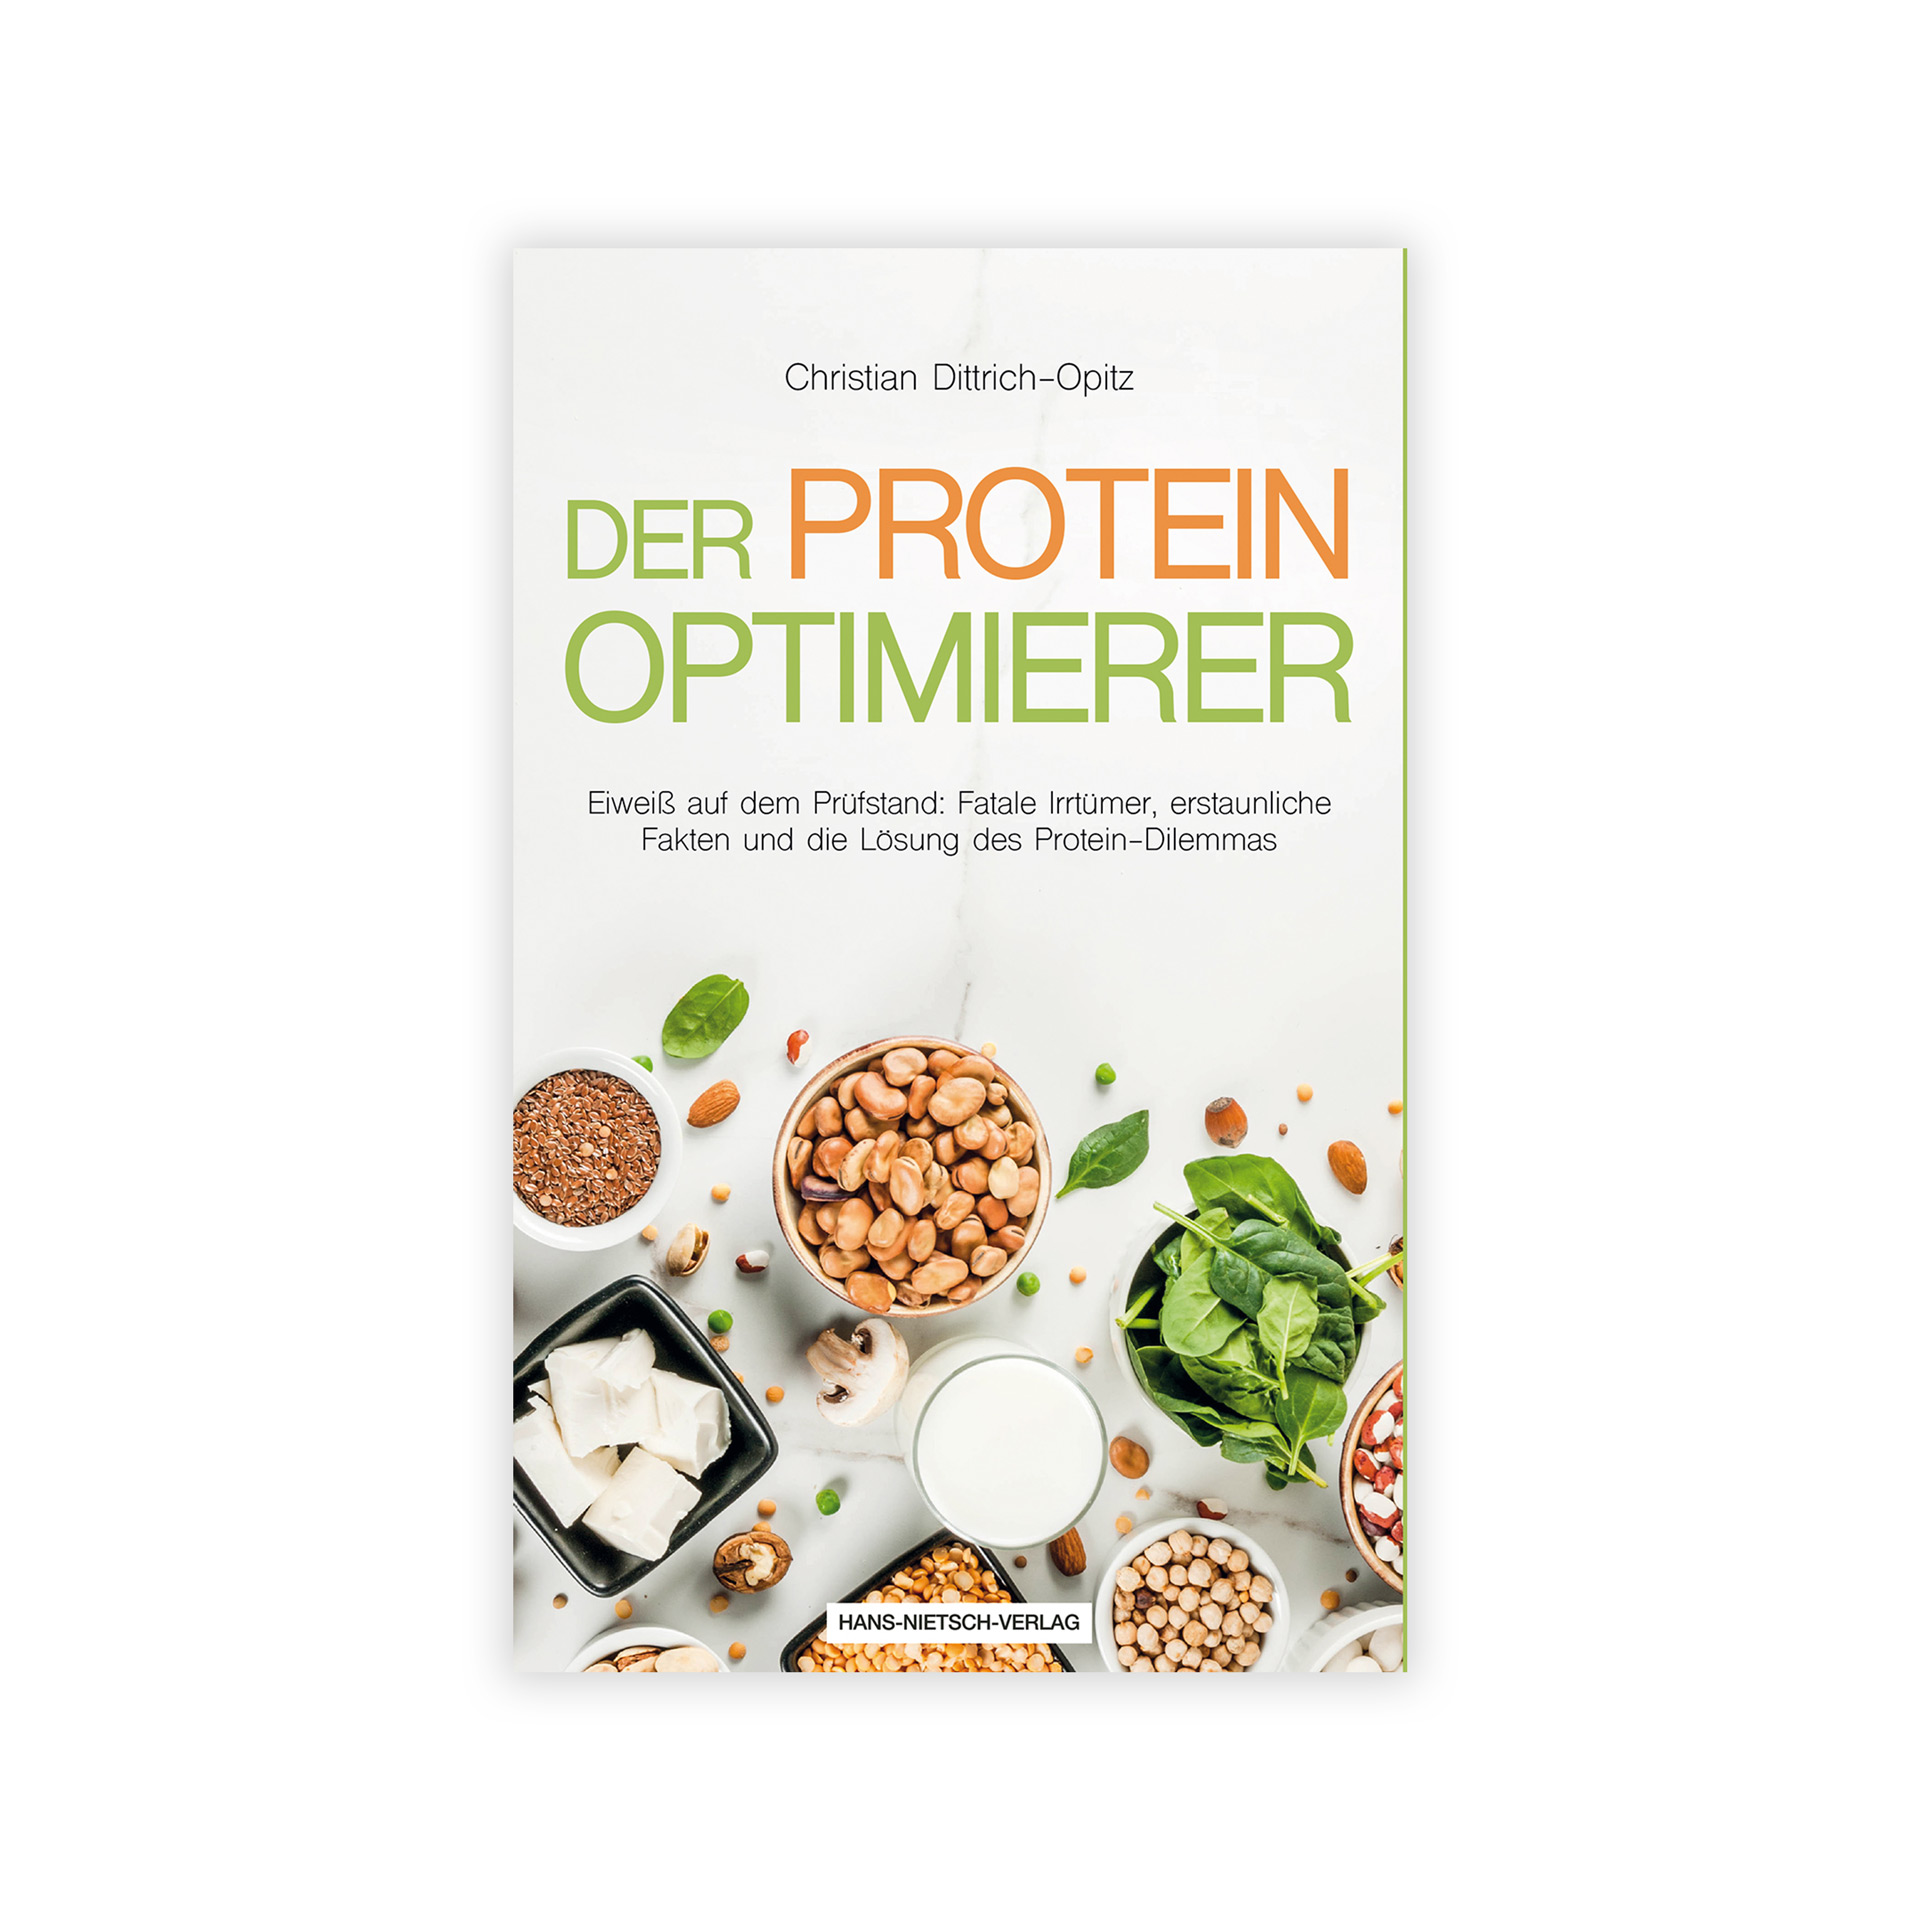 Der Protein Optimierer von Christian Dittrich-Opitz: Klärt Irrtümer zum Thema Proteine und gibt Anregungen zur optimierten Versorgung